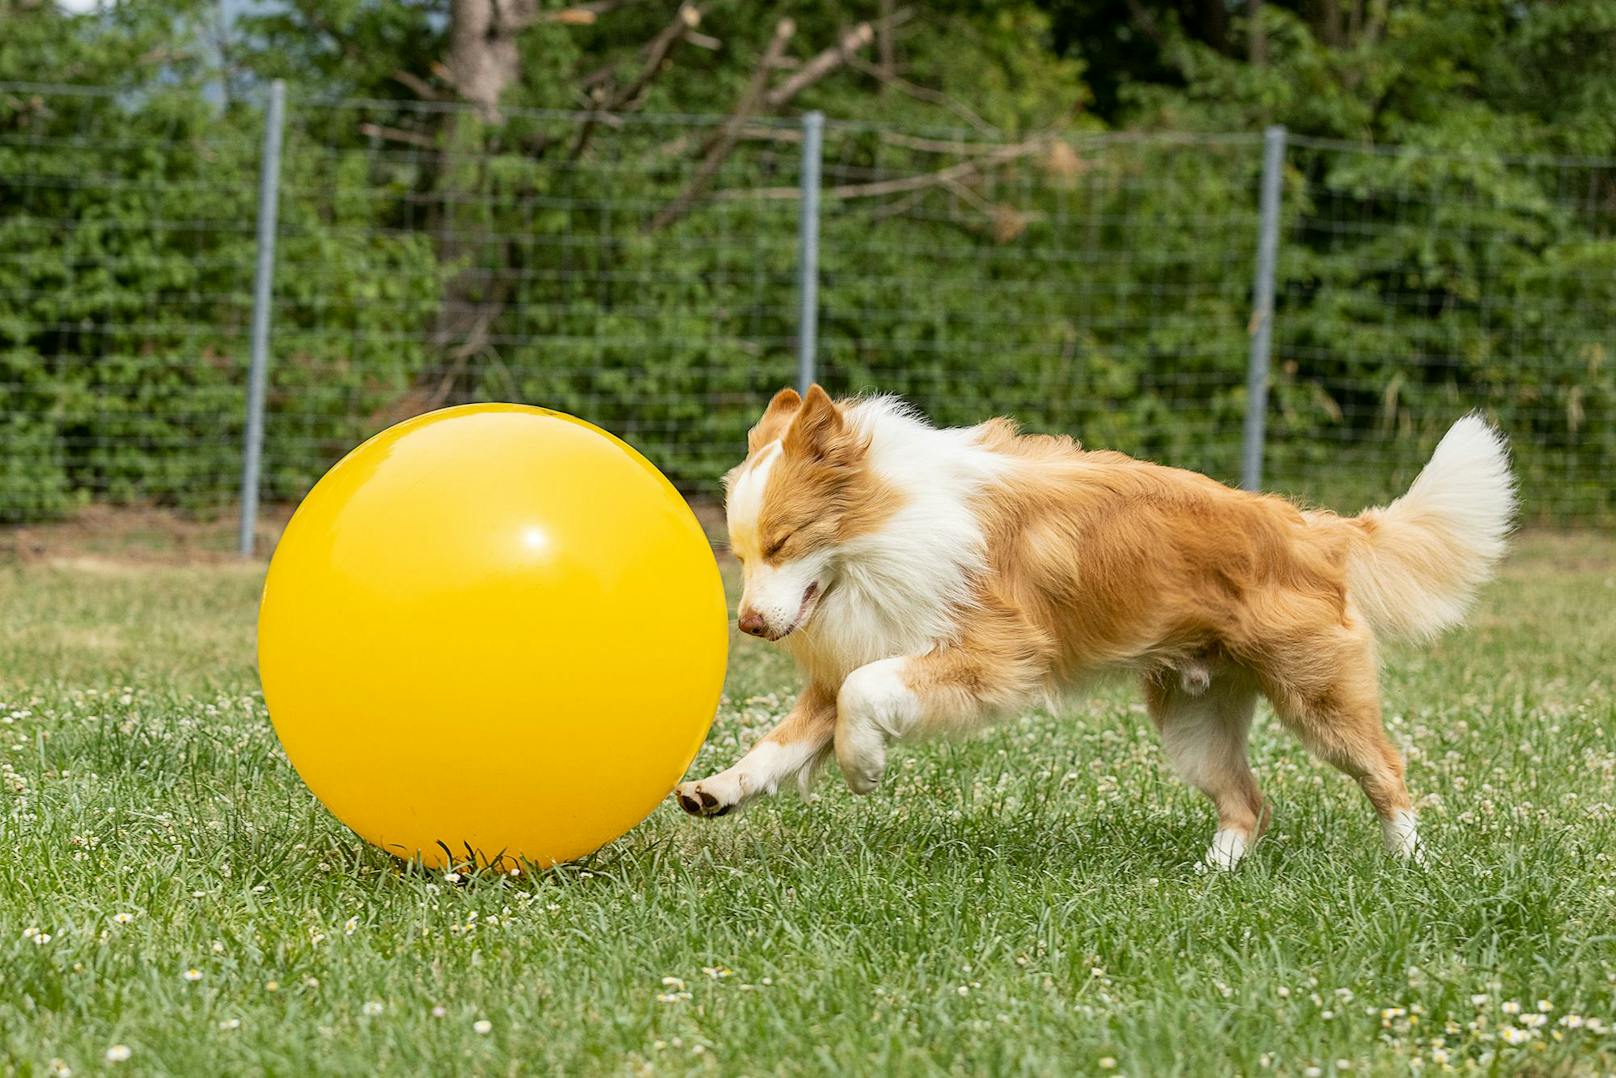 Schließlich muss der Hund ja den Ball auch lernen zu lenken. Gar nicht so einfach. 